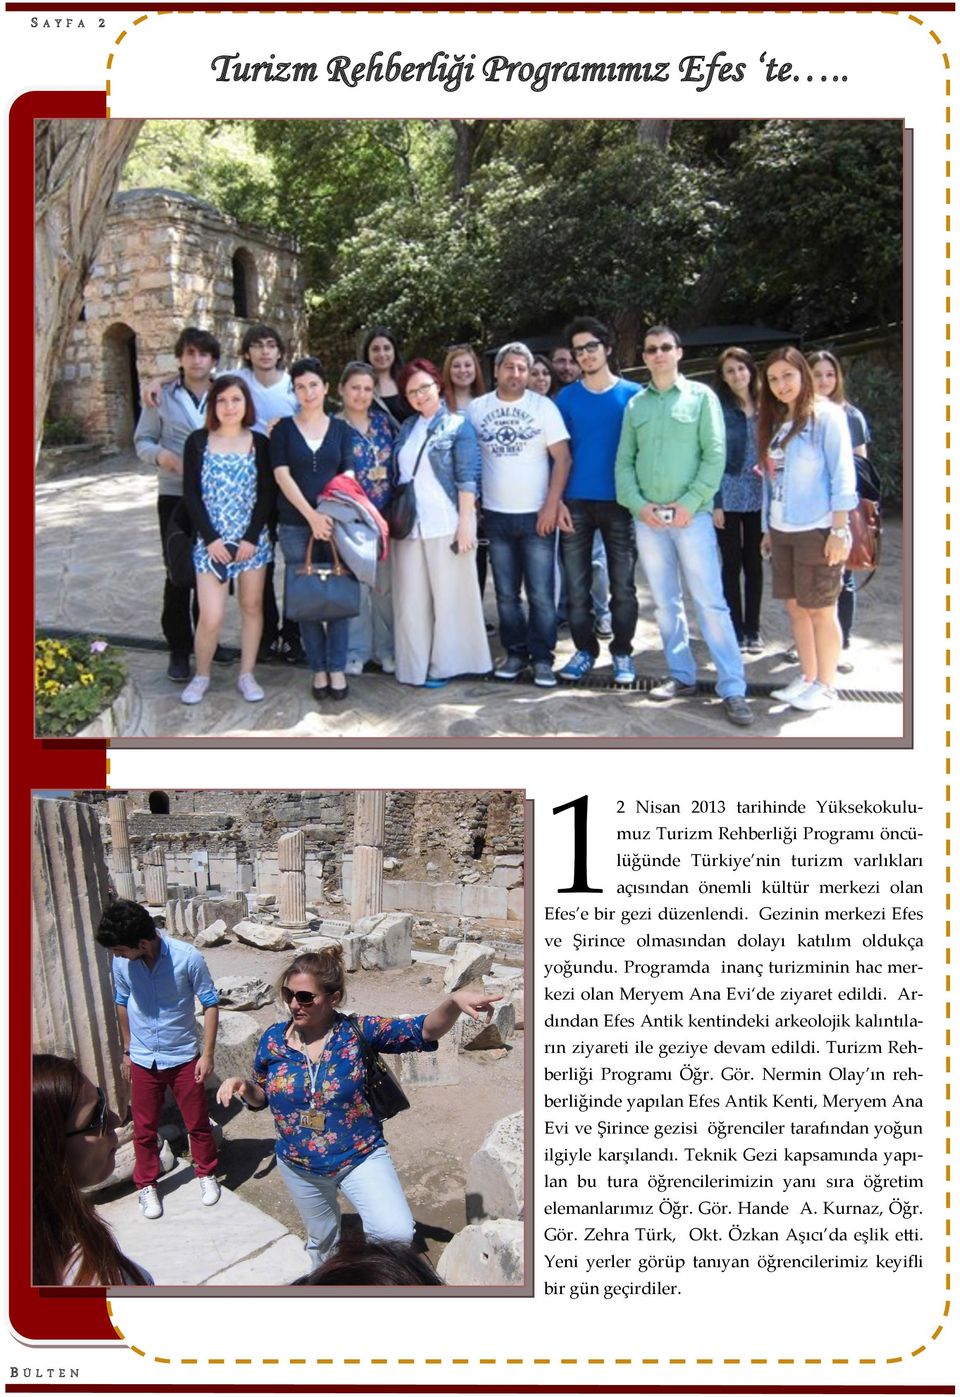 Gezinin merkezi Efes ve Şirince olmasından dolayı katılım oldukça yoğundu. Programda inanç turizminin hac merkezi olan Meryem Ana Evi de ziyaret edildi.